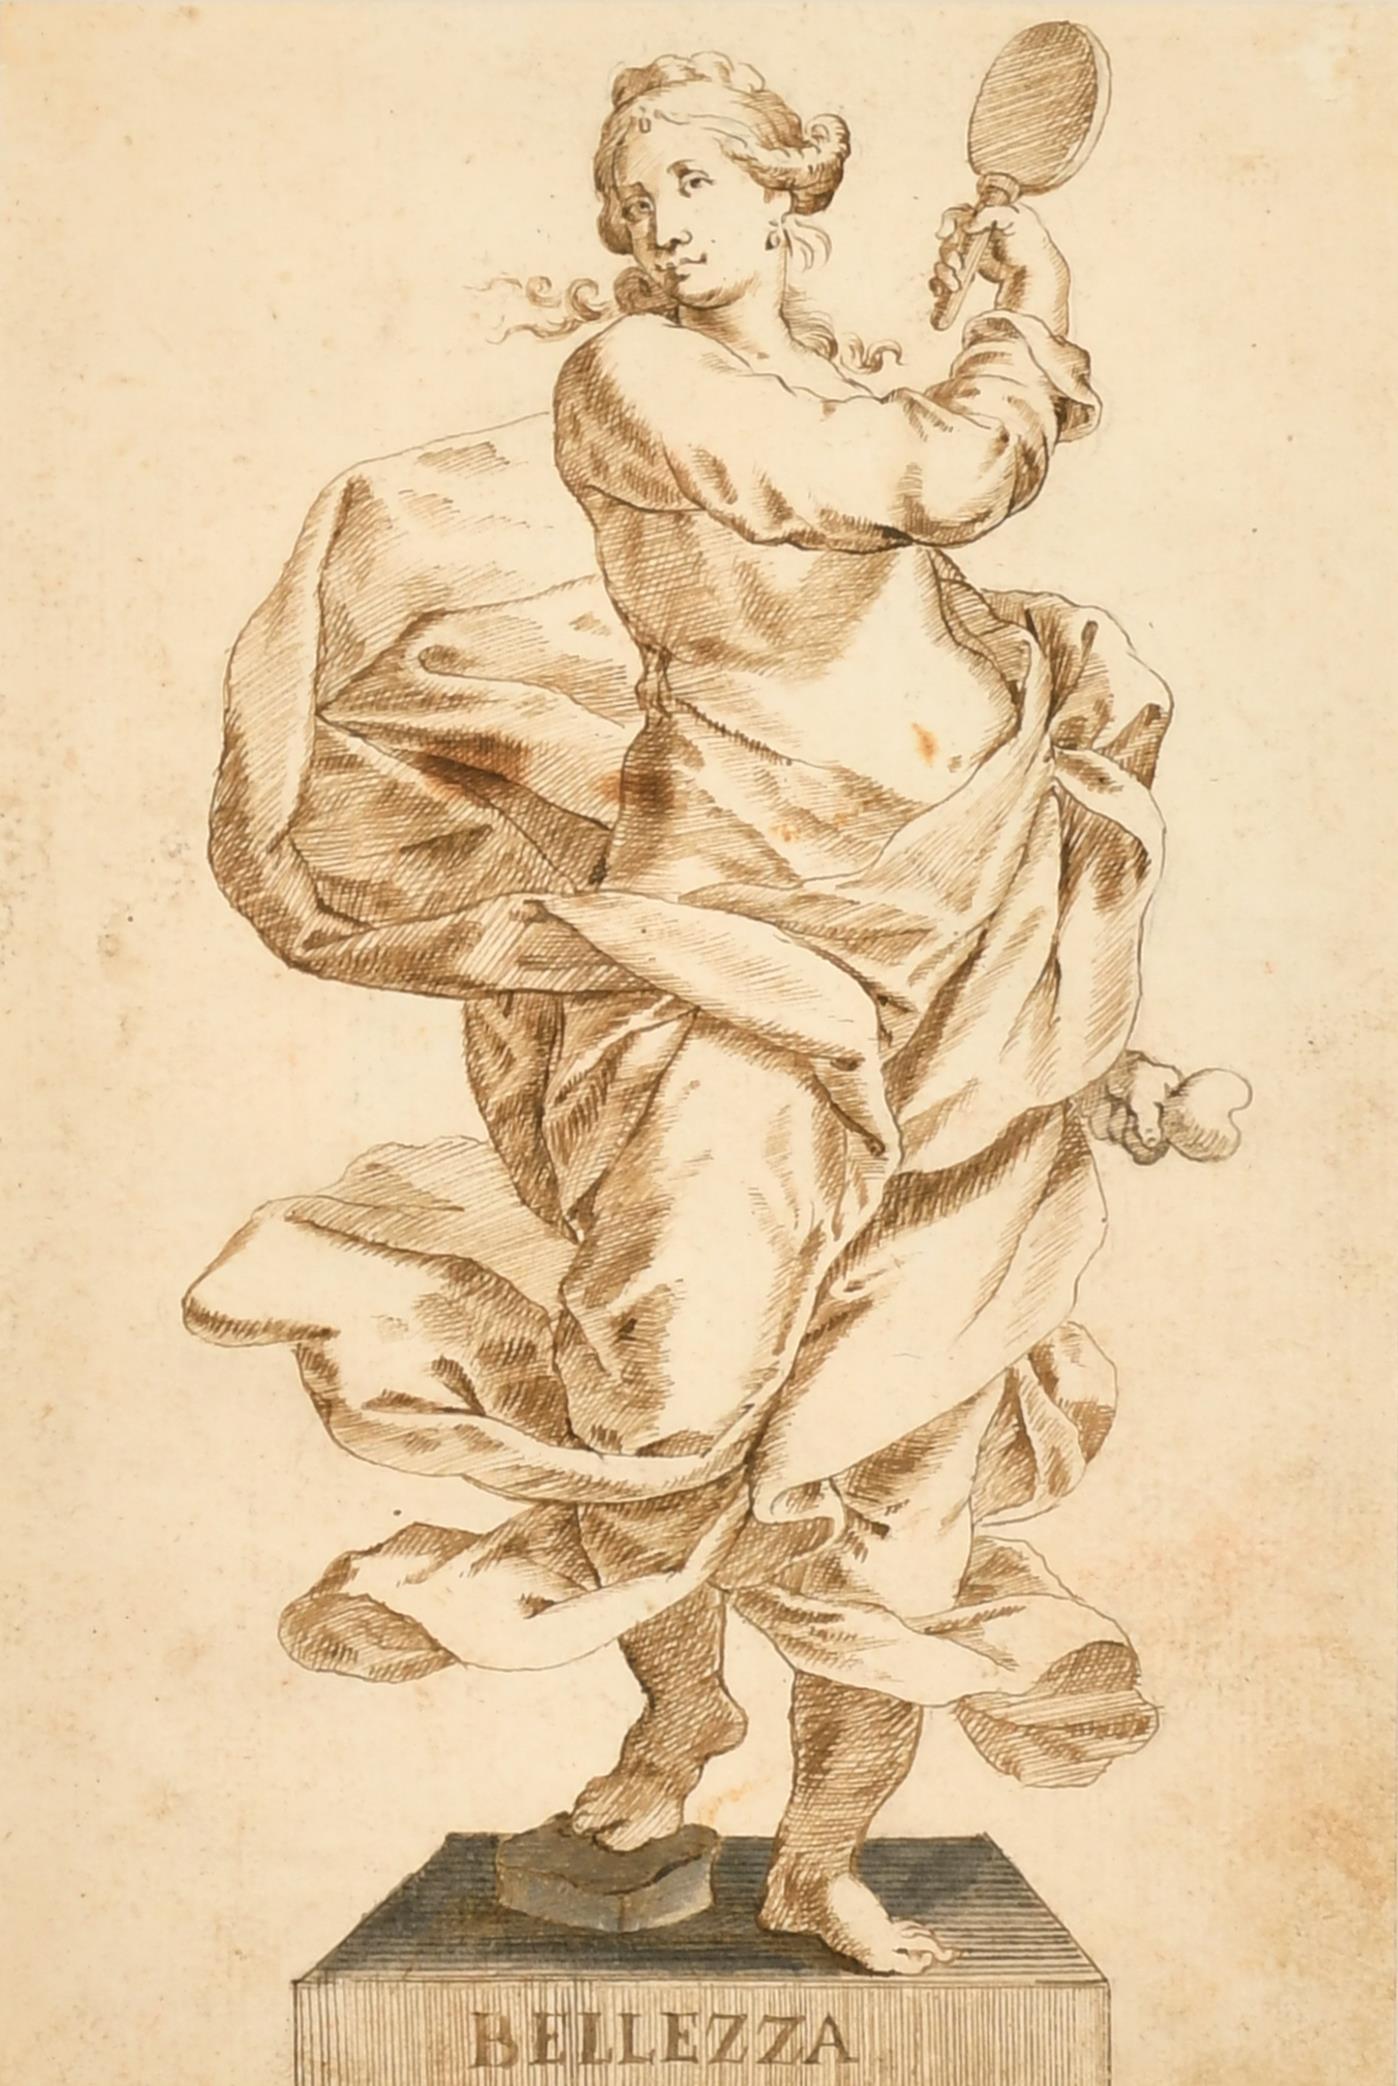 Figurative Painting 18thC Italian Old Master - Belle statue de femme romaine de beauté italienne des années 1700 à l'encre et au lavis, dessin de maître ancien